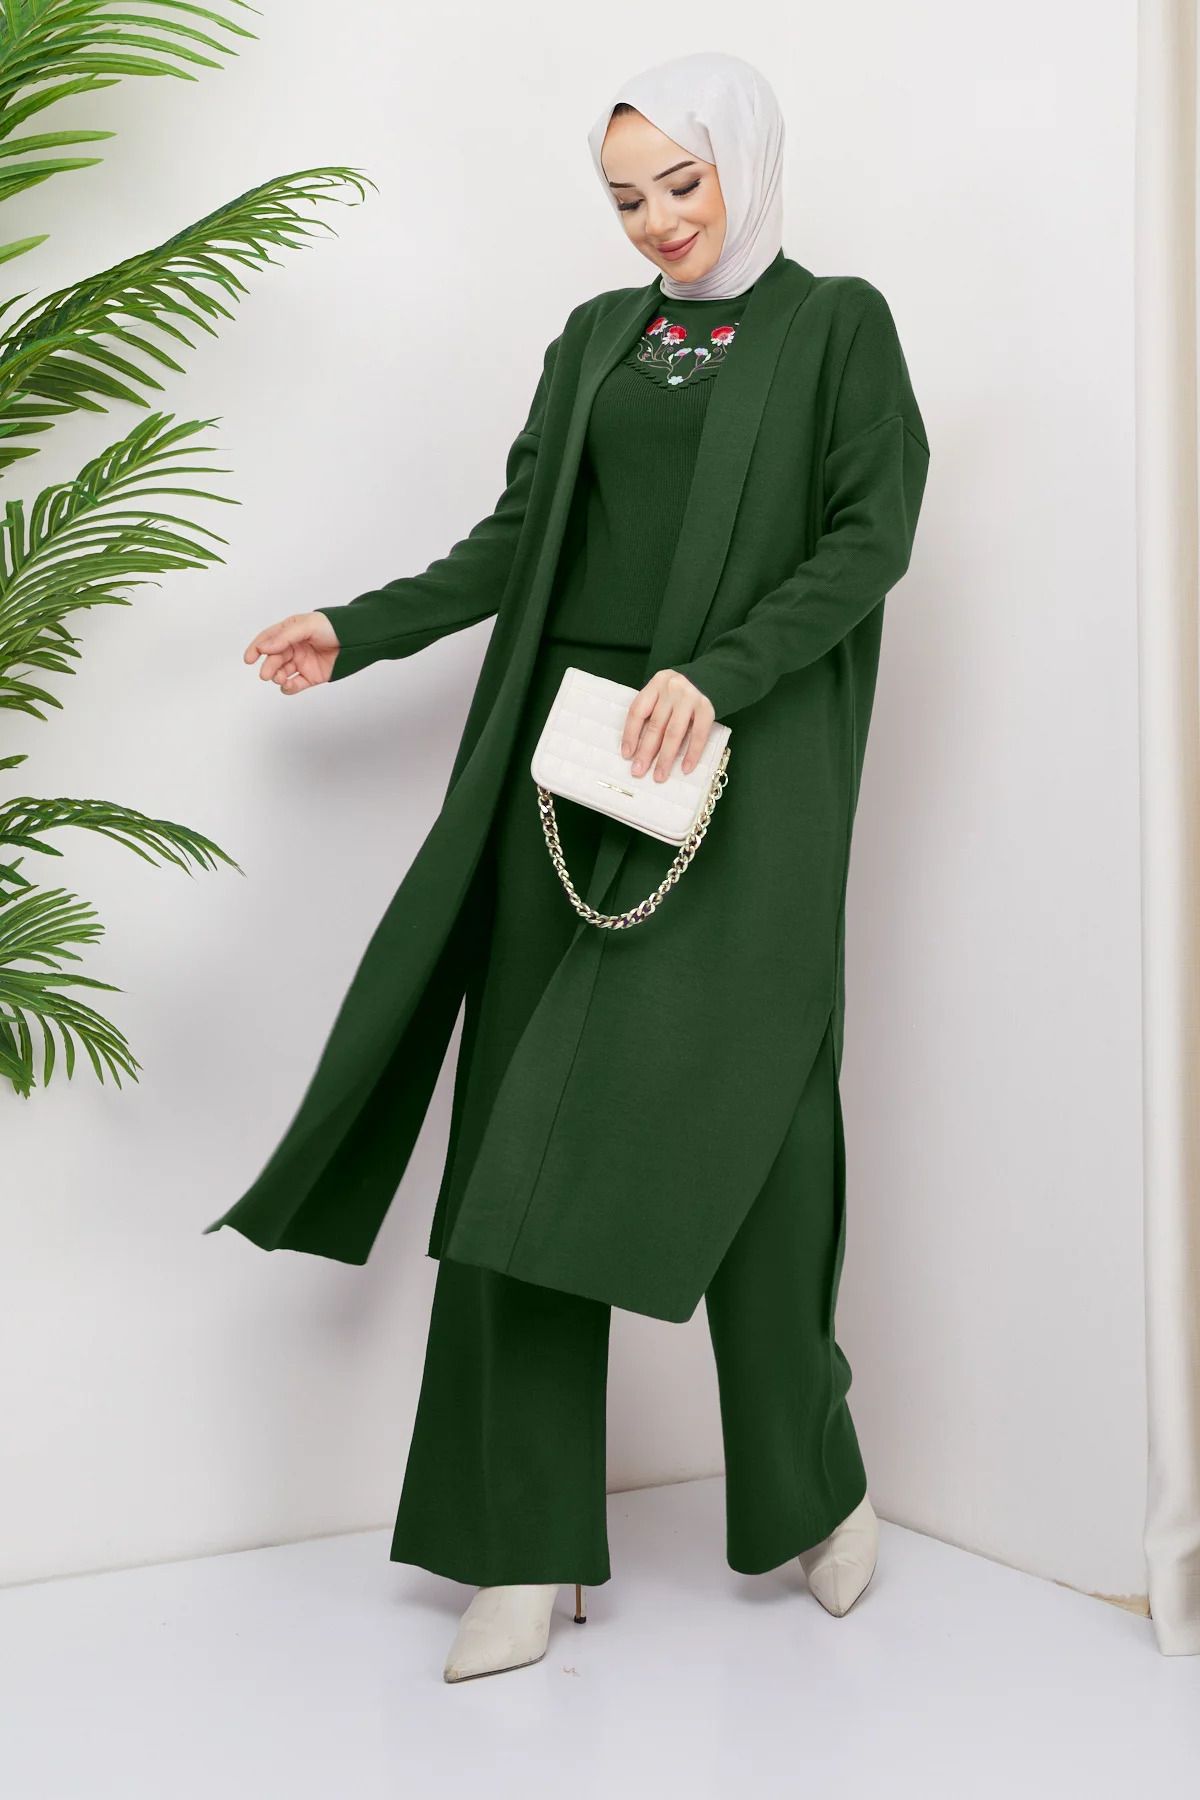 Julude Yeşil Yaka İşlemeli Triko Bluz Pantolon Hırka Tesettür Üçlü Takım